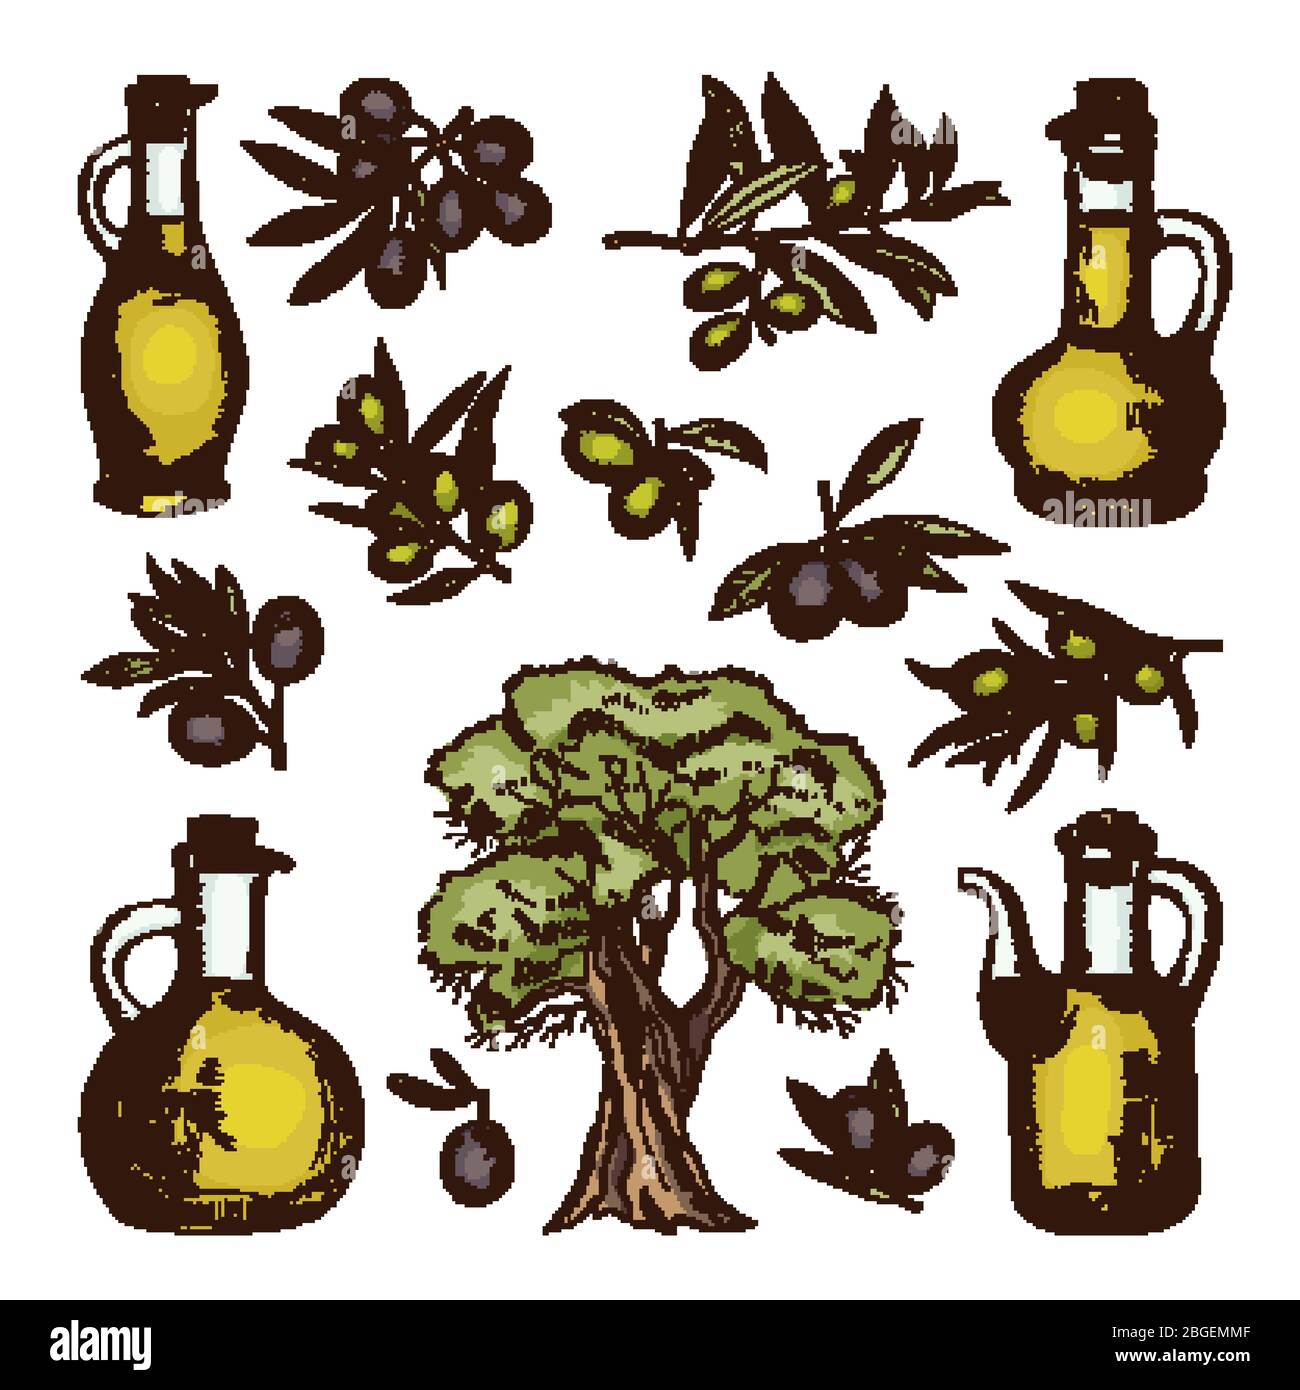 Illustrazioni colorate di diversi prodotti e ingredienti di oliva. Immagini vettoriali disegnate a mano isolate Illustrazione Vettoriale